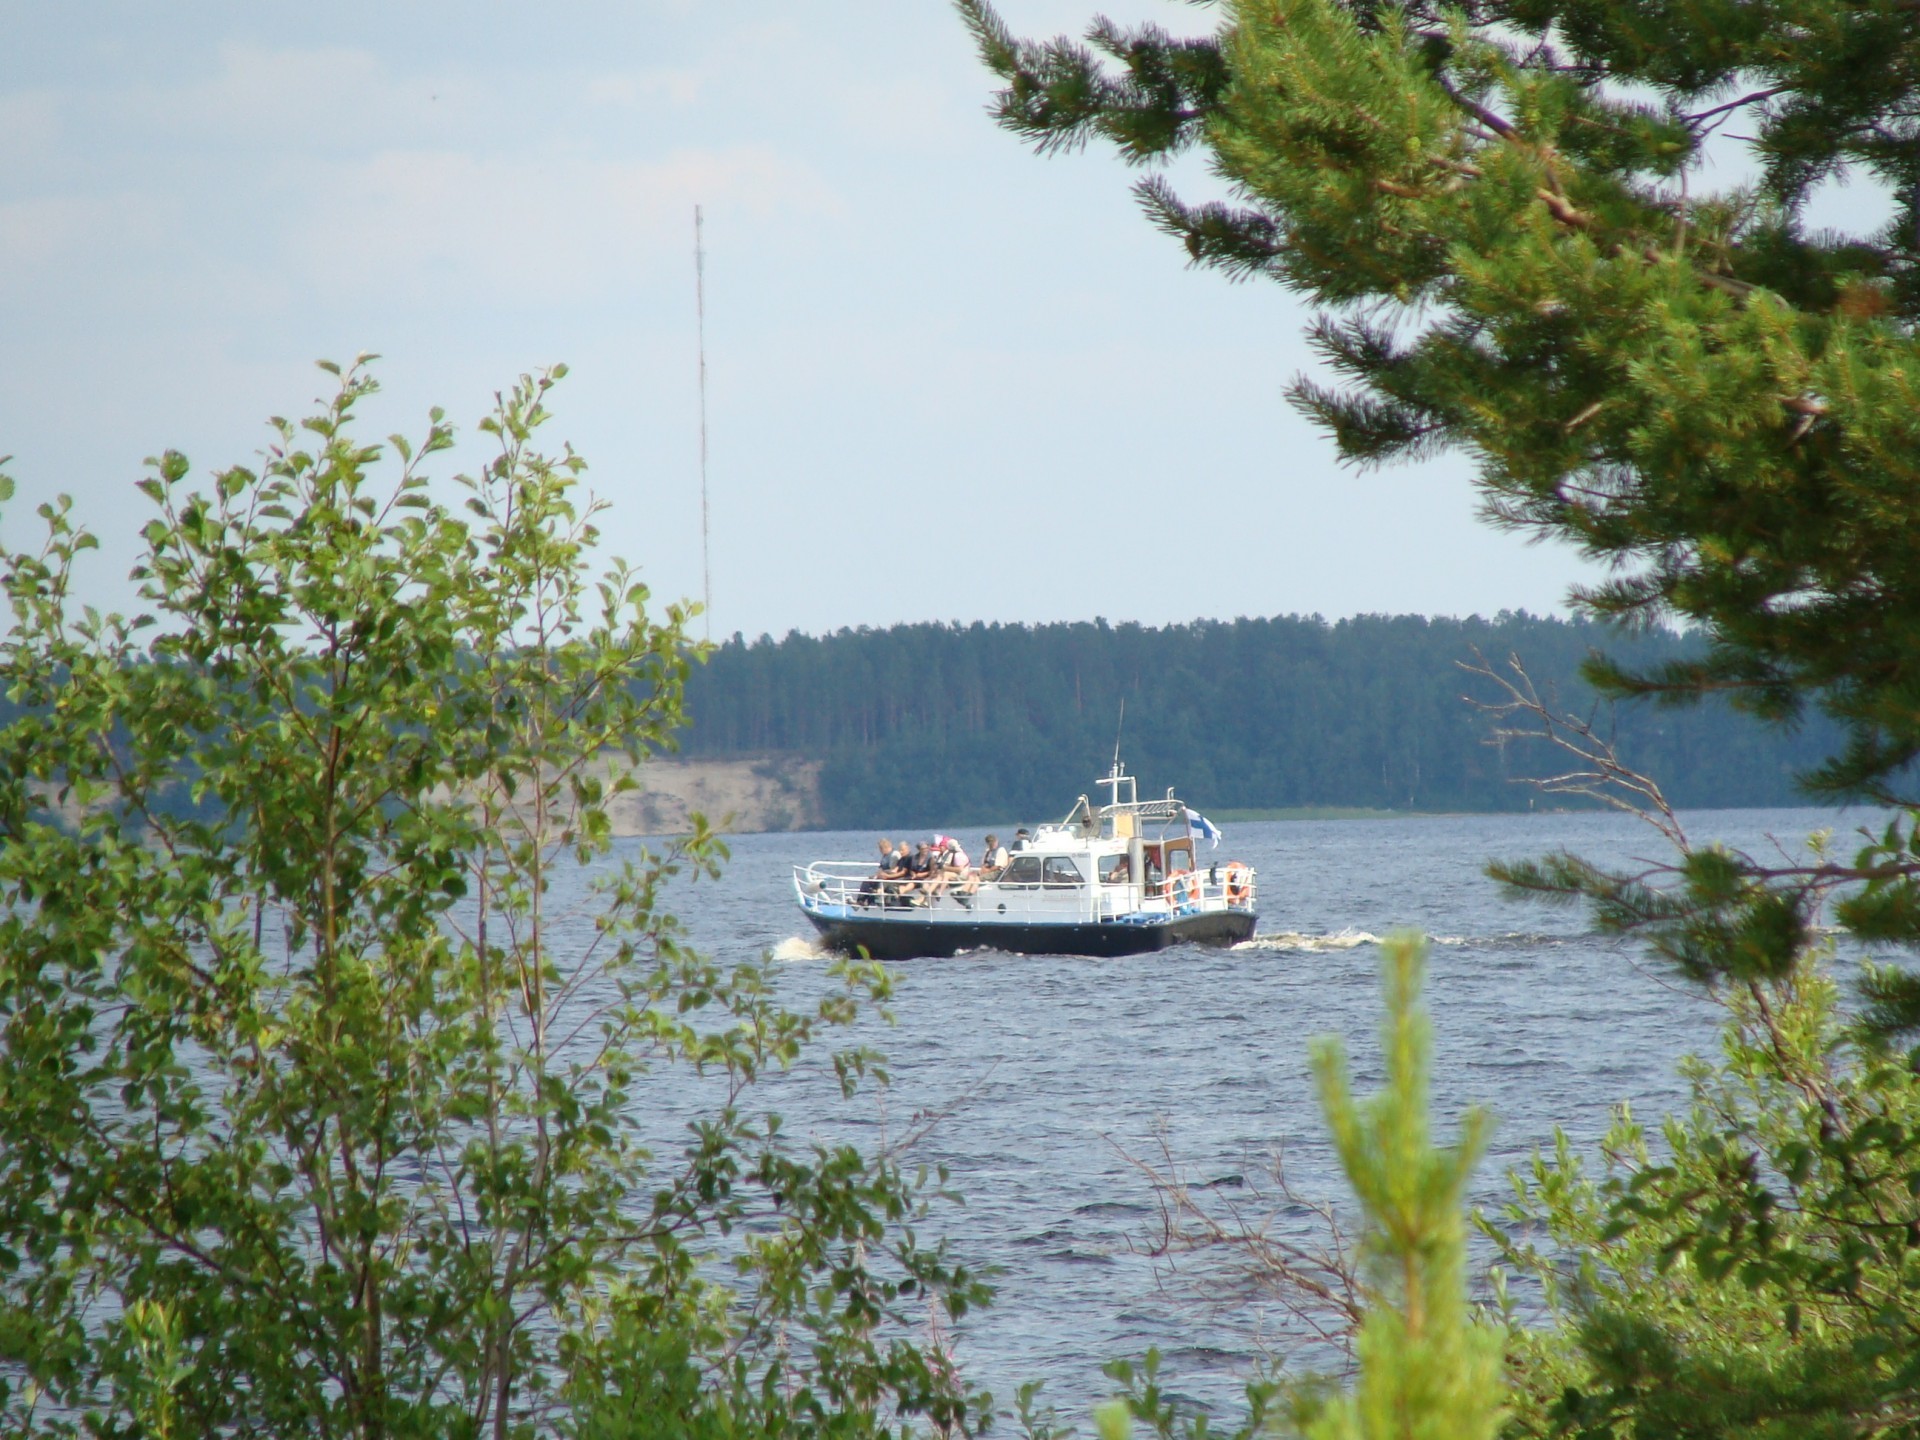 Helteillä järvellä on vilskettä, mutta muulloin Oulujärven aavoilla ei juuri veneitä näy.